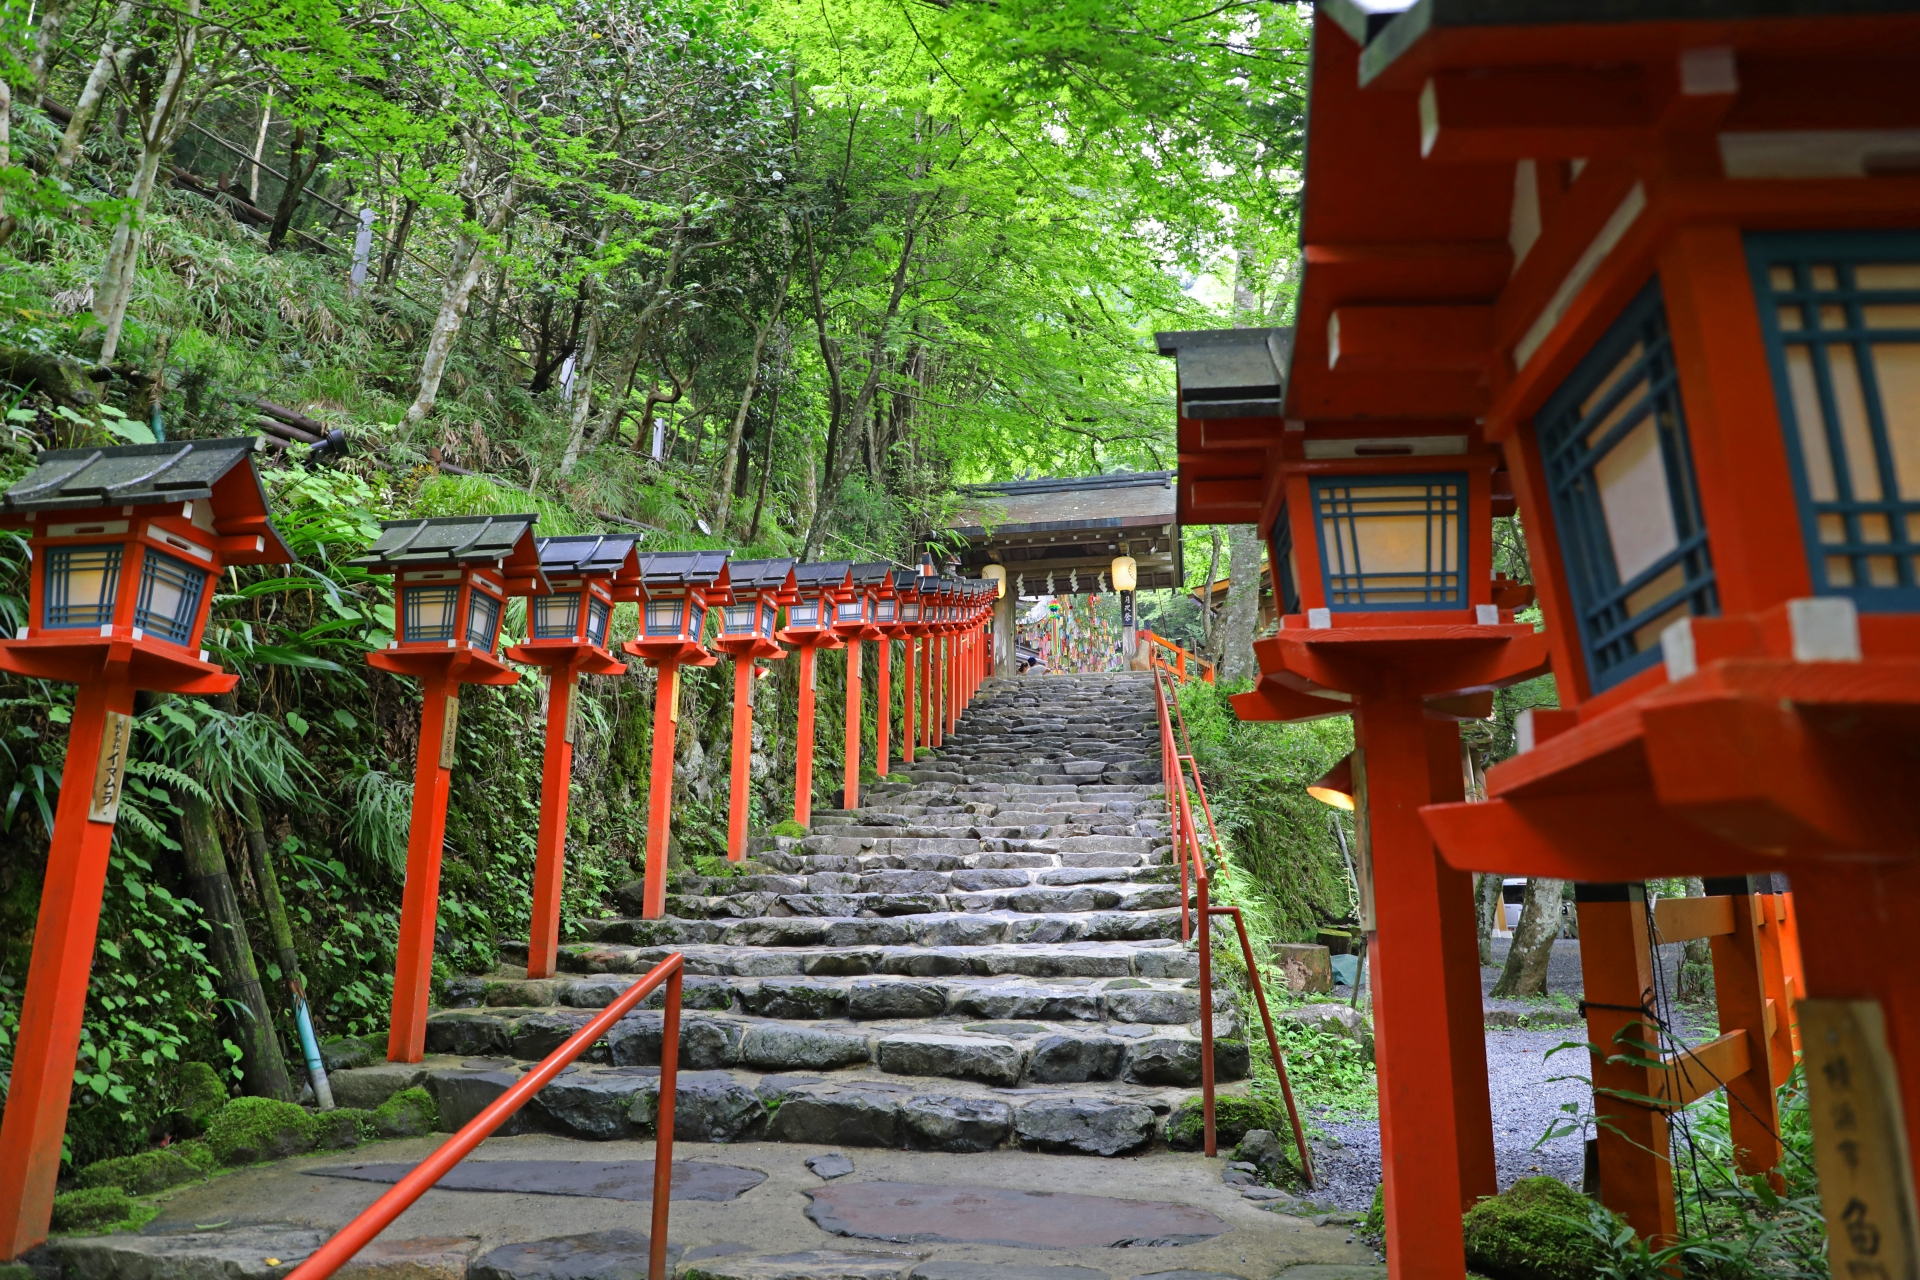 kifune shrine